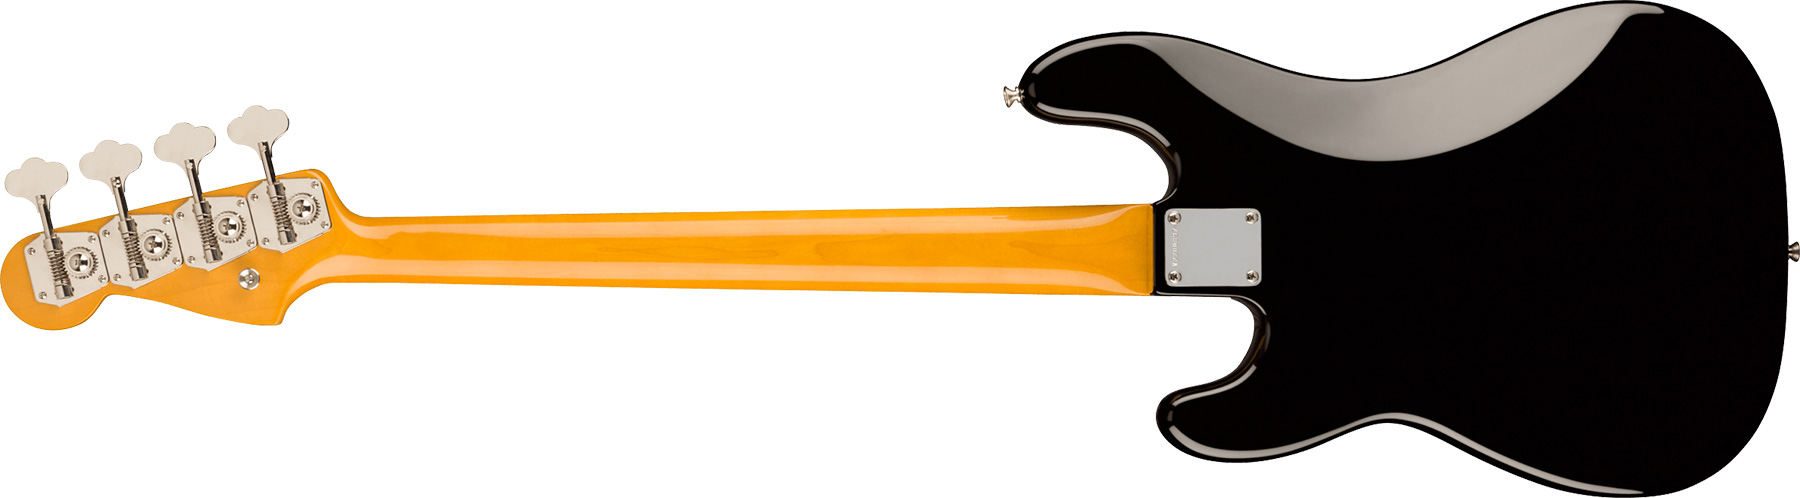 Fender Precision Bass 1960 American Vintage Ii Usa Rw - Black - Bajo eléctrico de cuerpo sólido - Variation 1